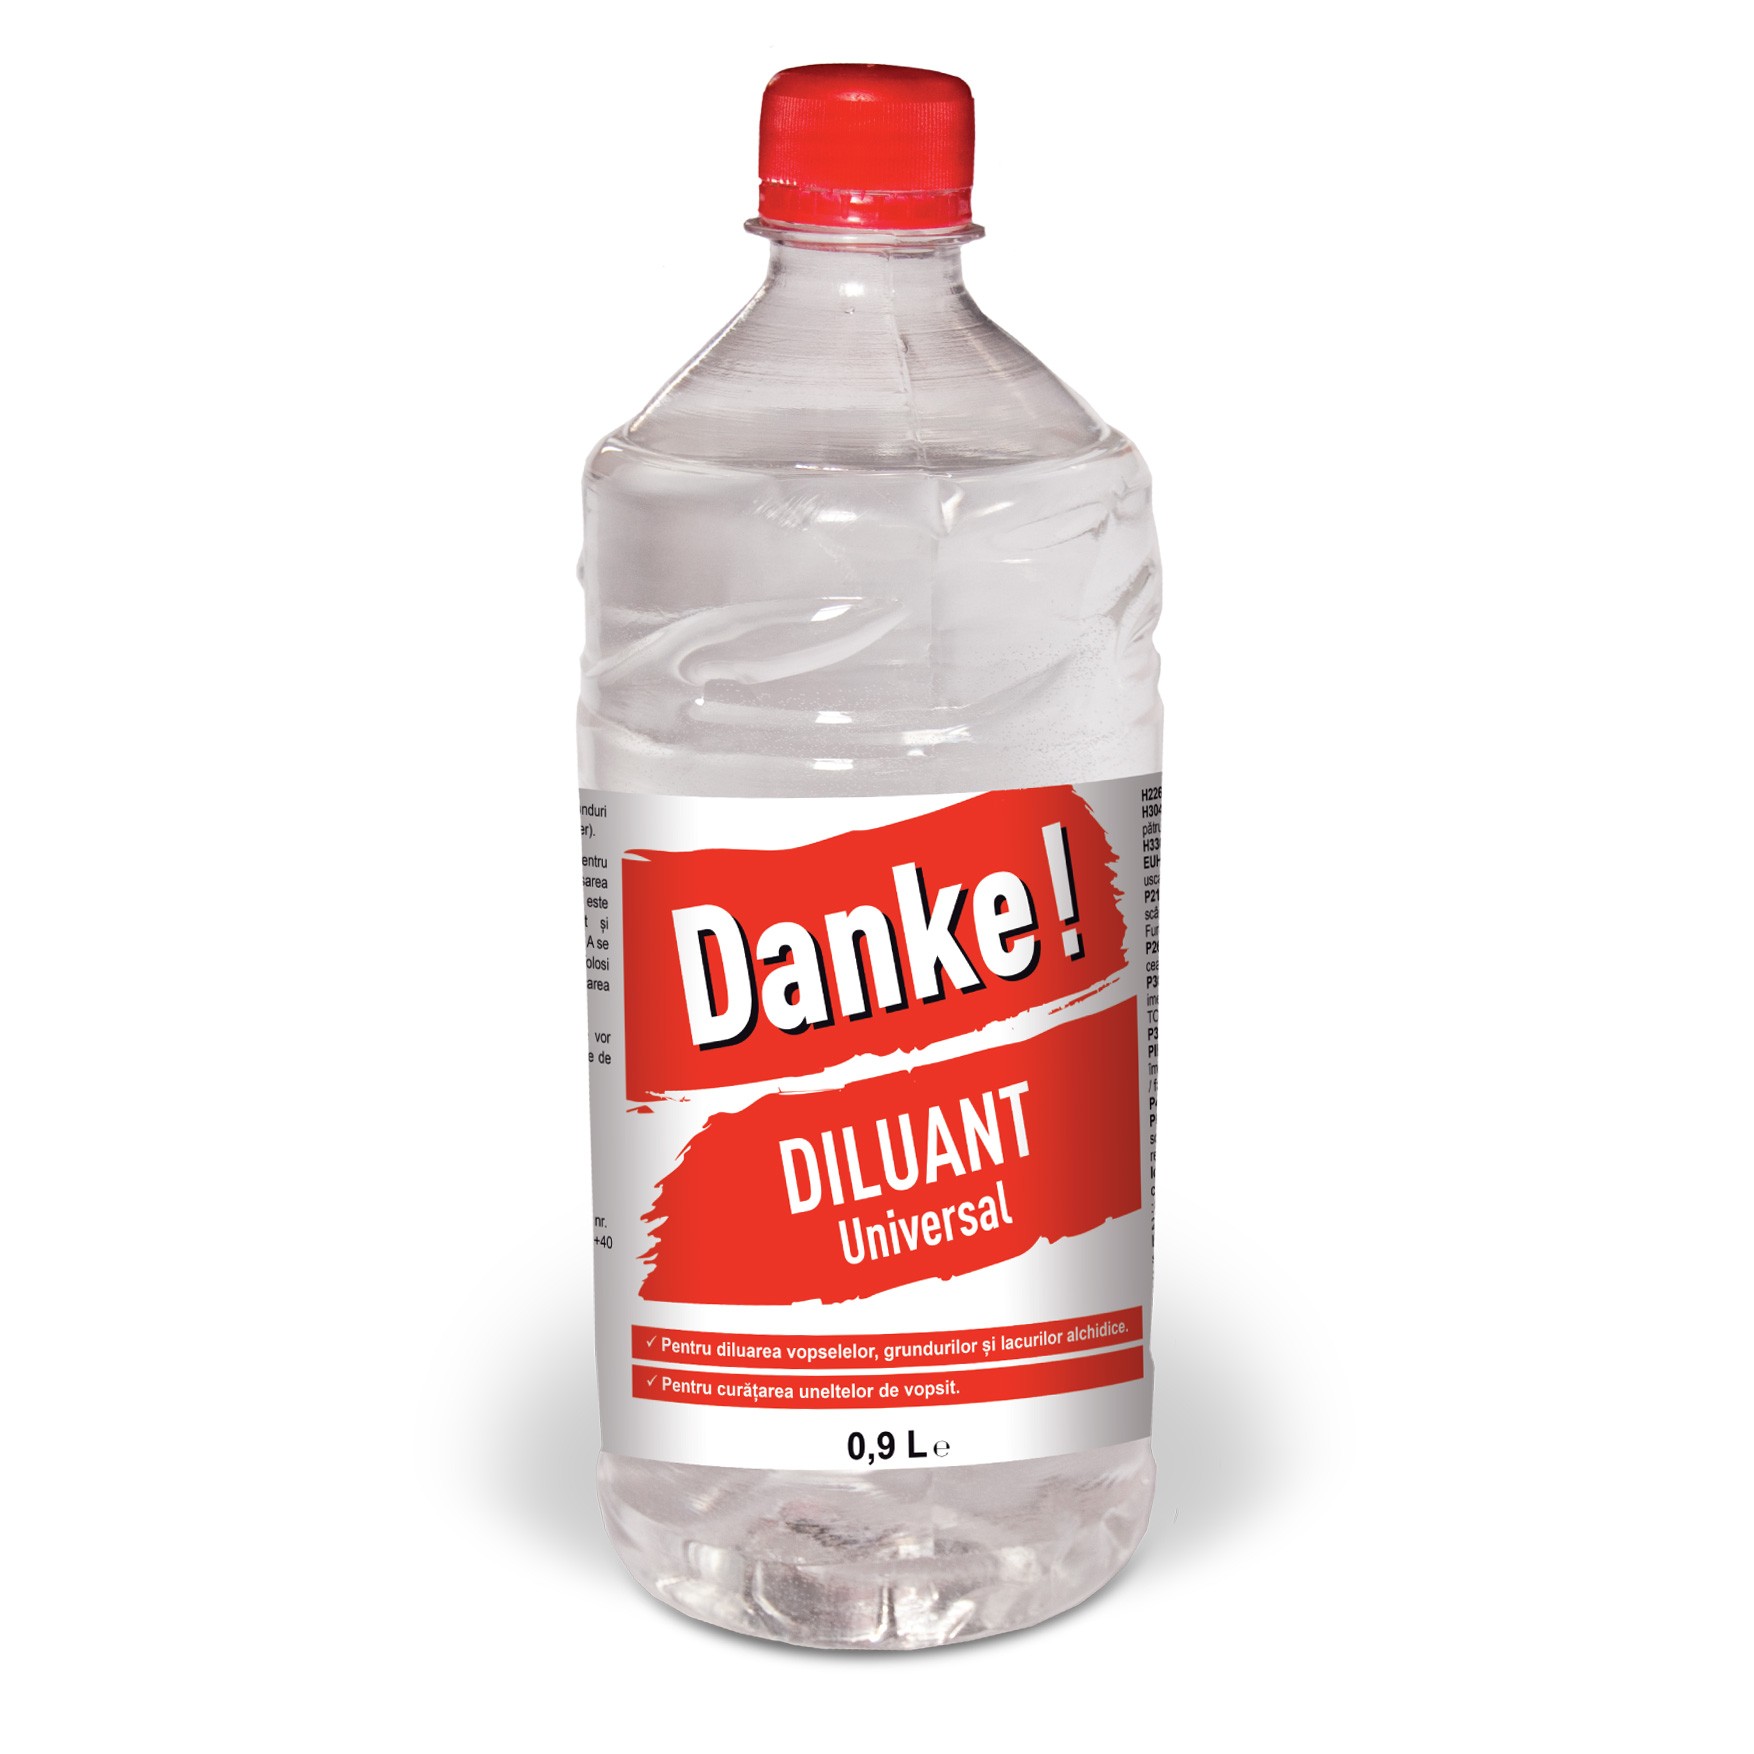 Diluant pentru vopsea si lac alchidic, Danke Universal, 0.9 L